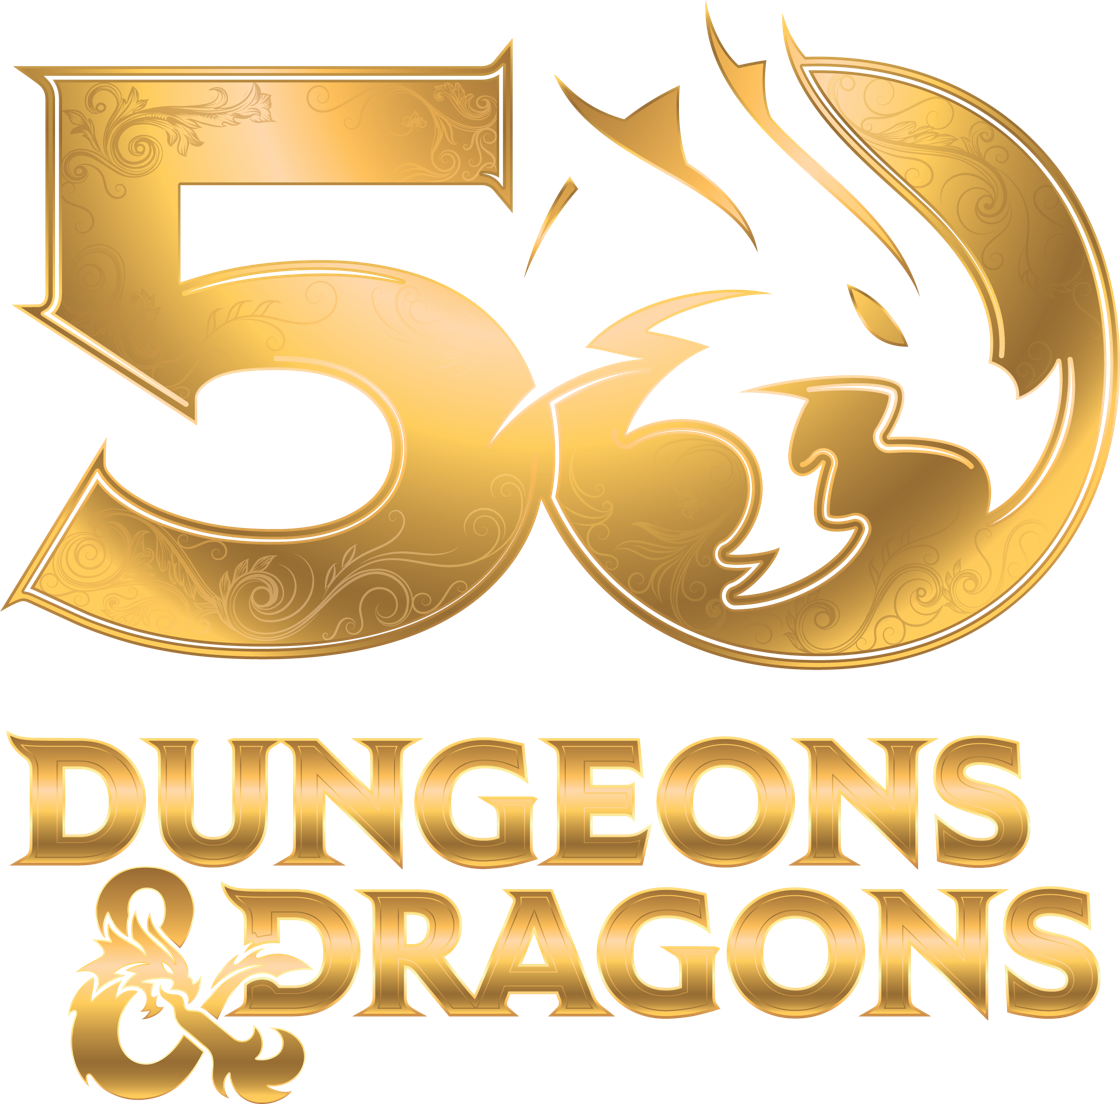 Dungeons & Dragons célèbre son 50e anniversaire en 2024 avec plus de 50 millions de fans